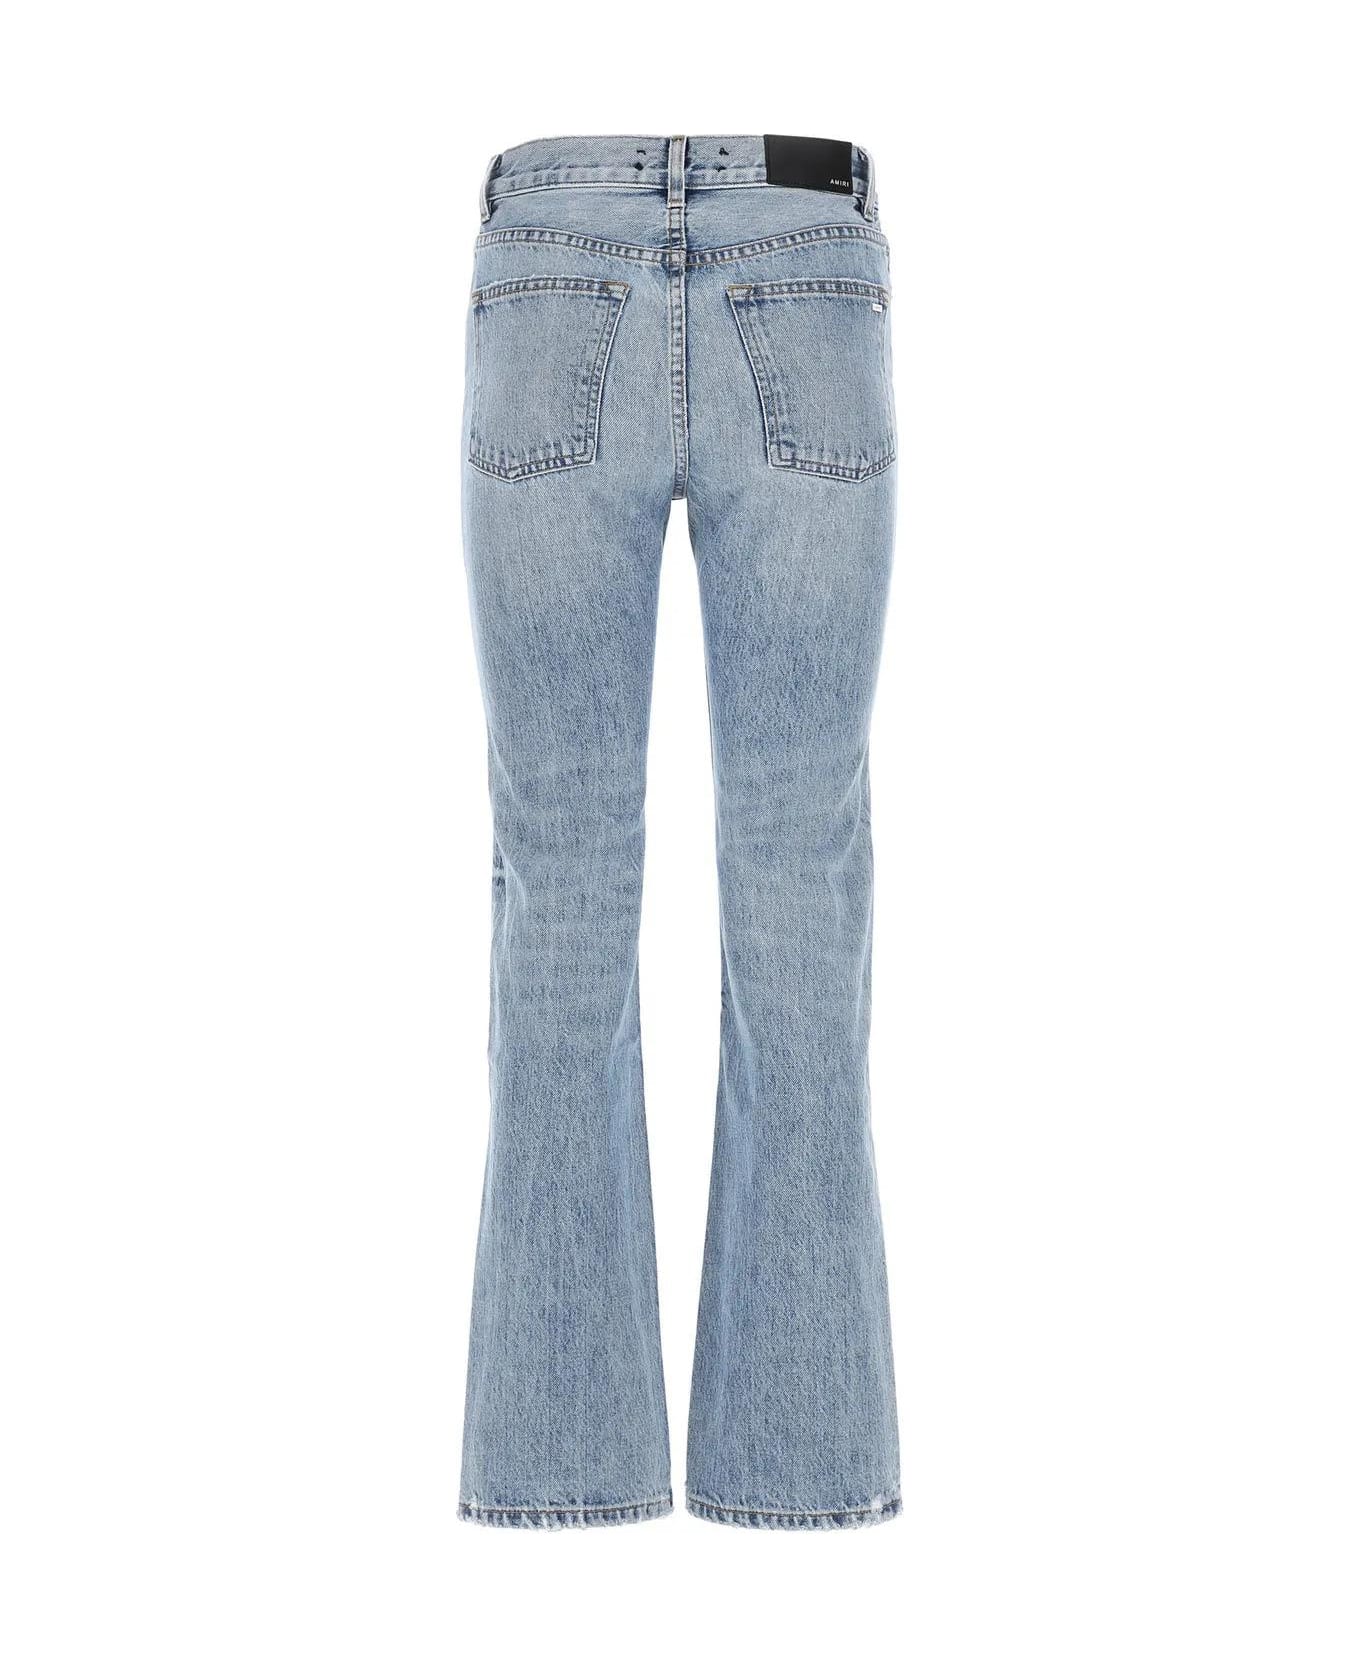 AMIRI Denim Jeans - Rosebowl